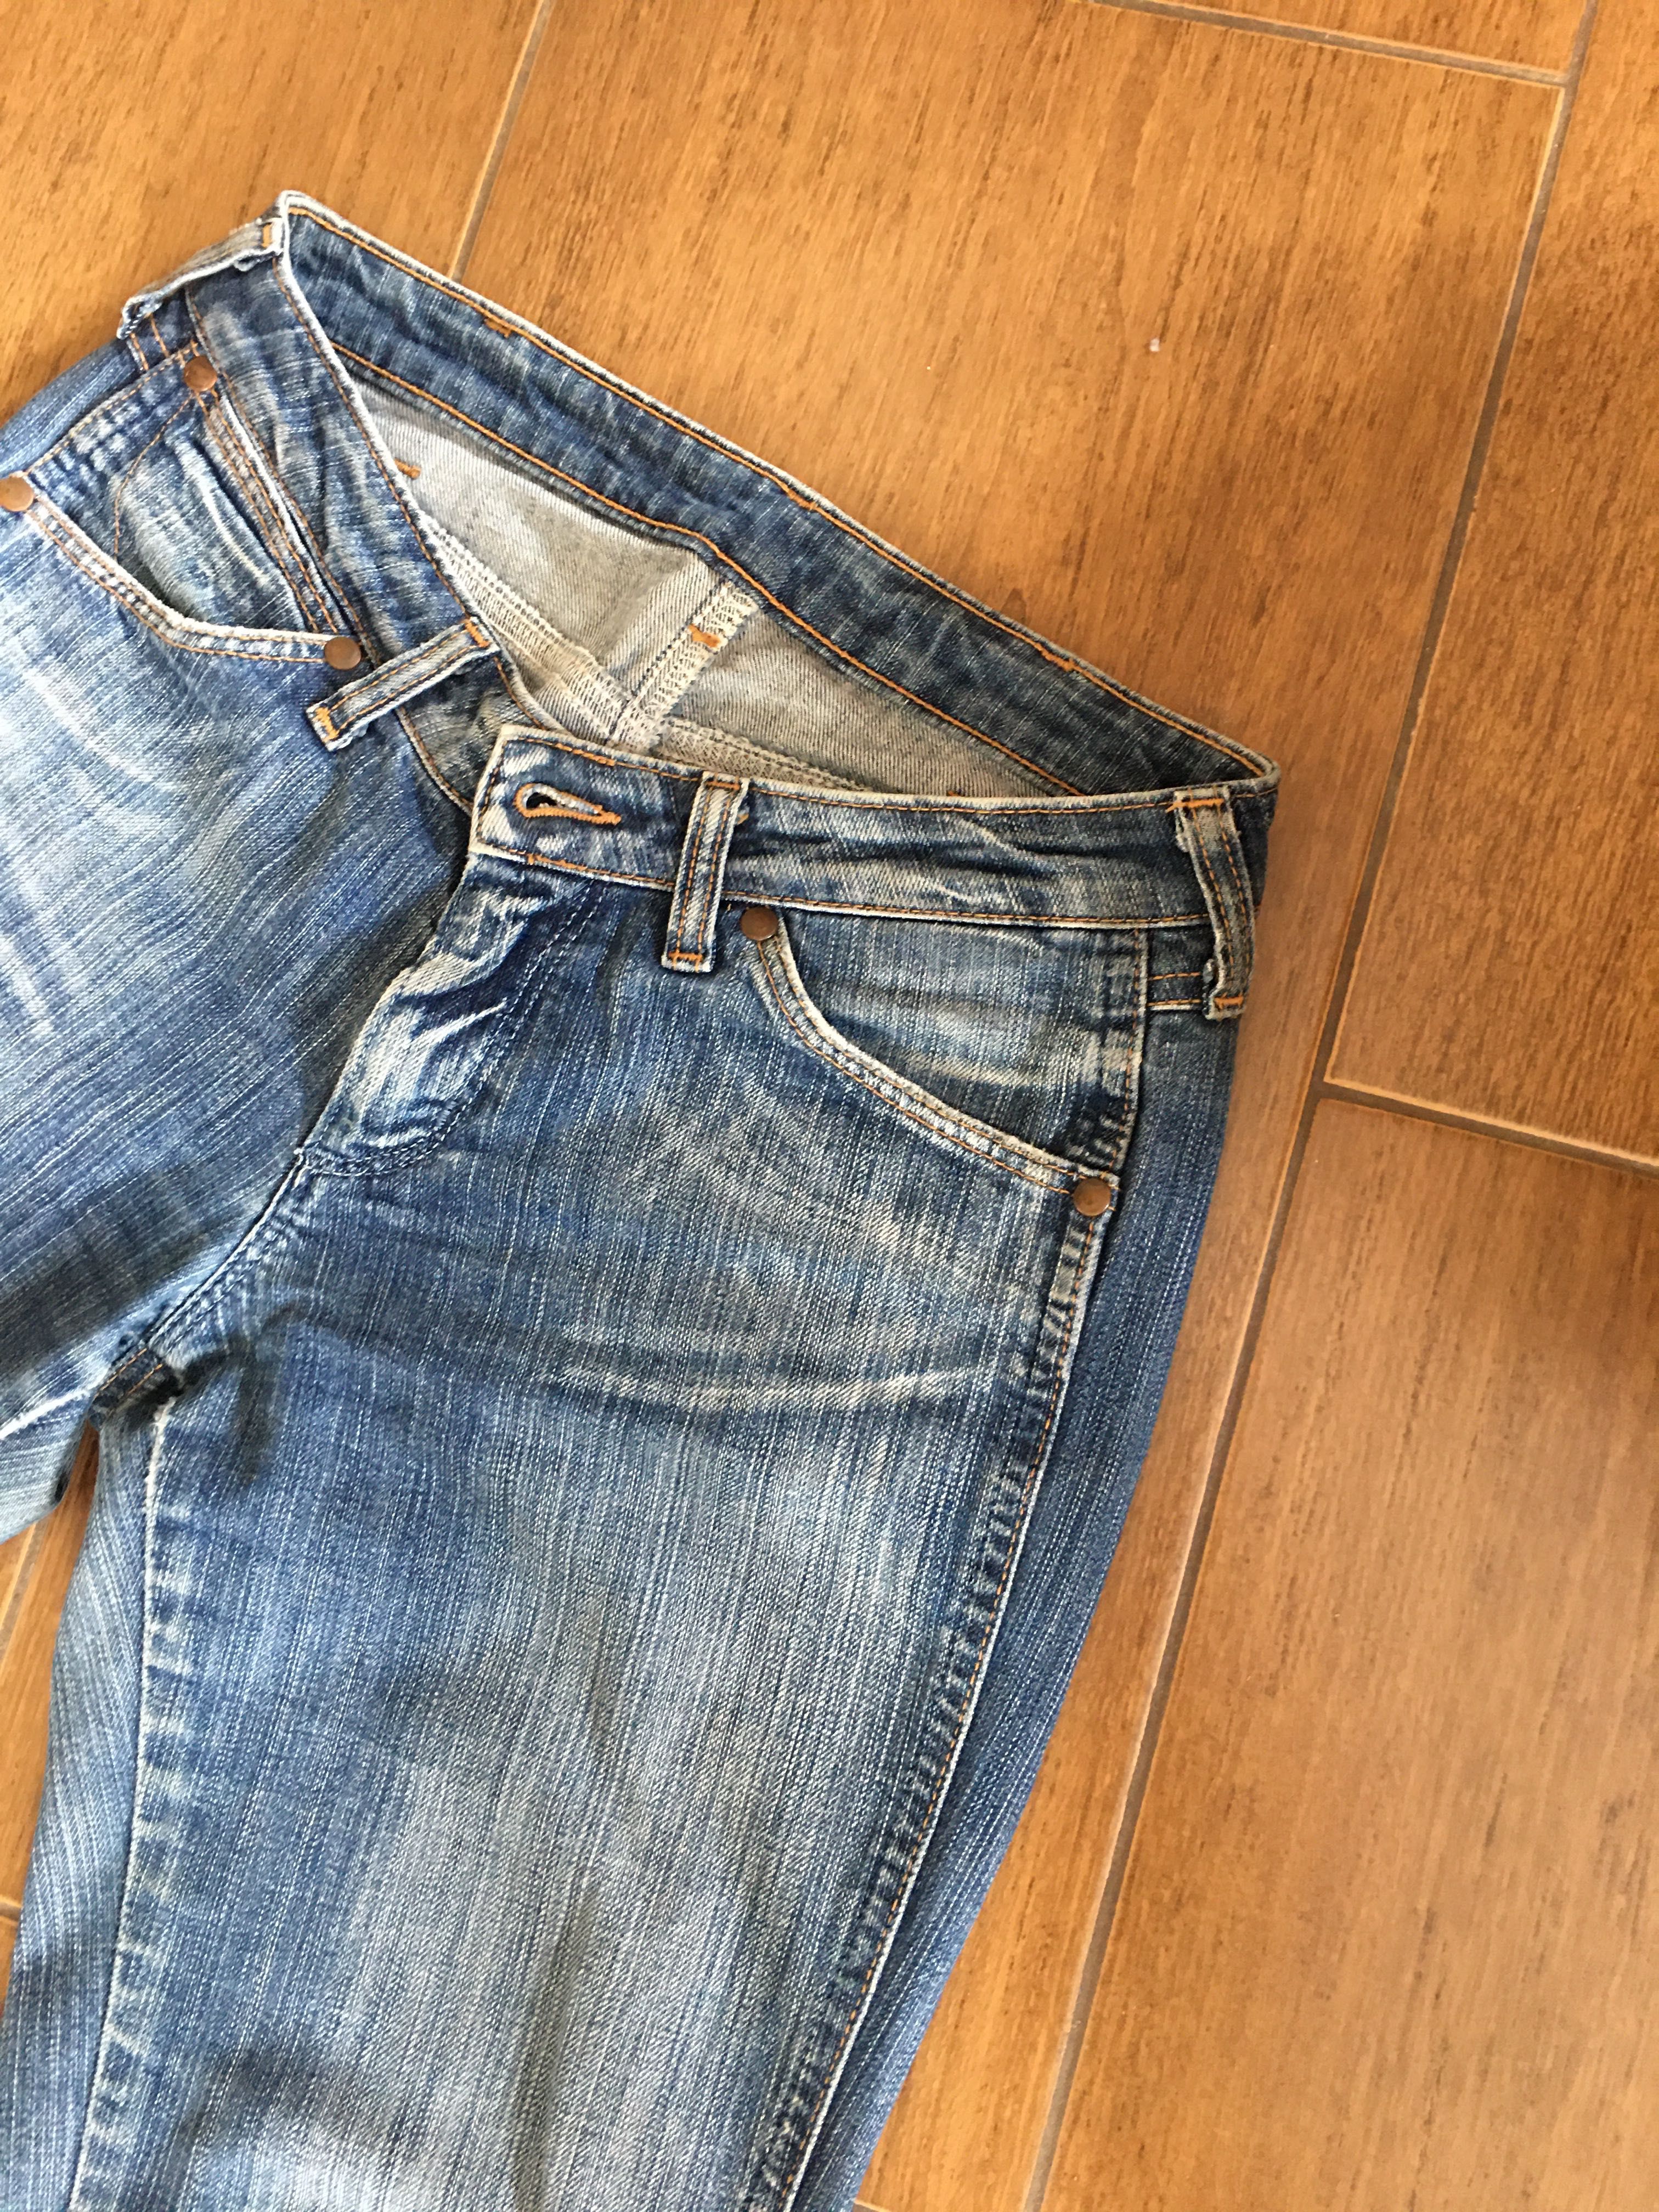 Spodnie jeansy, Wrangler, rozmiar W30, L 34, granatowe